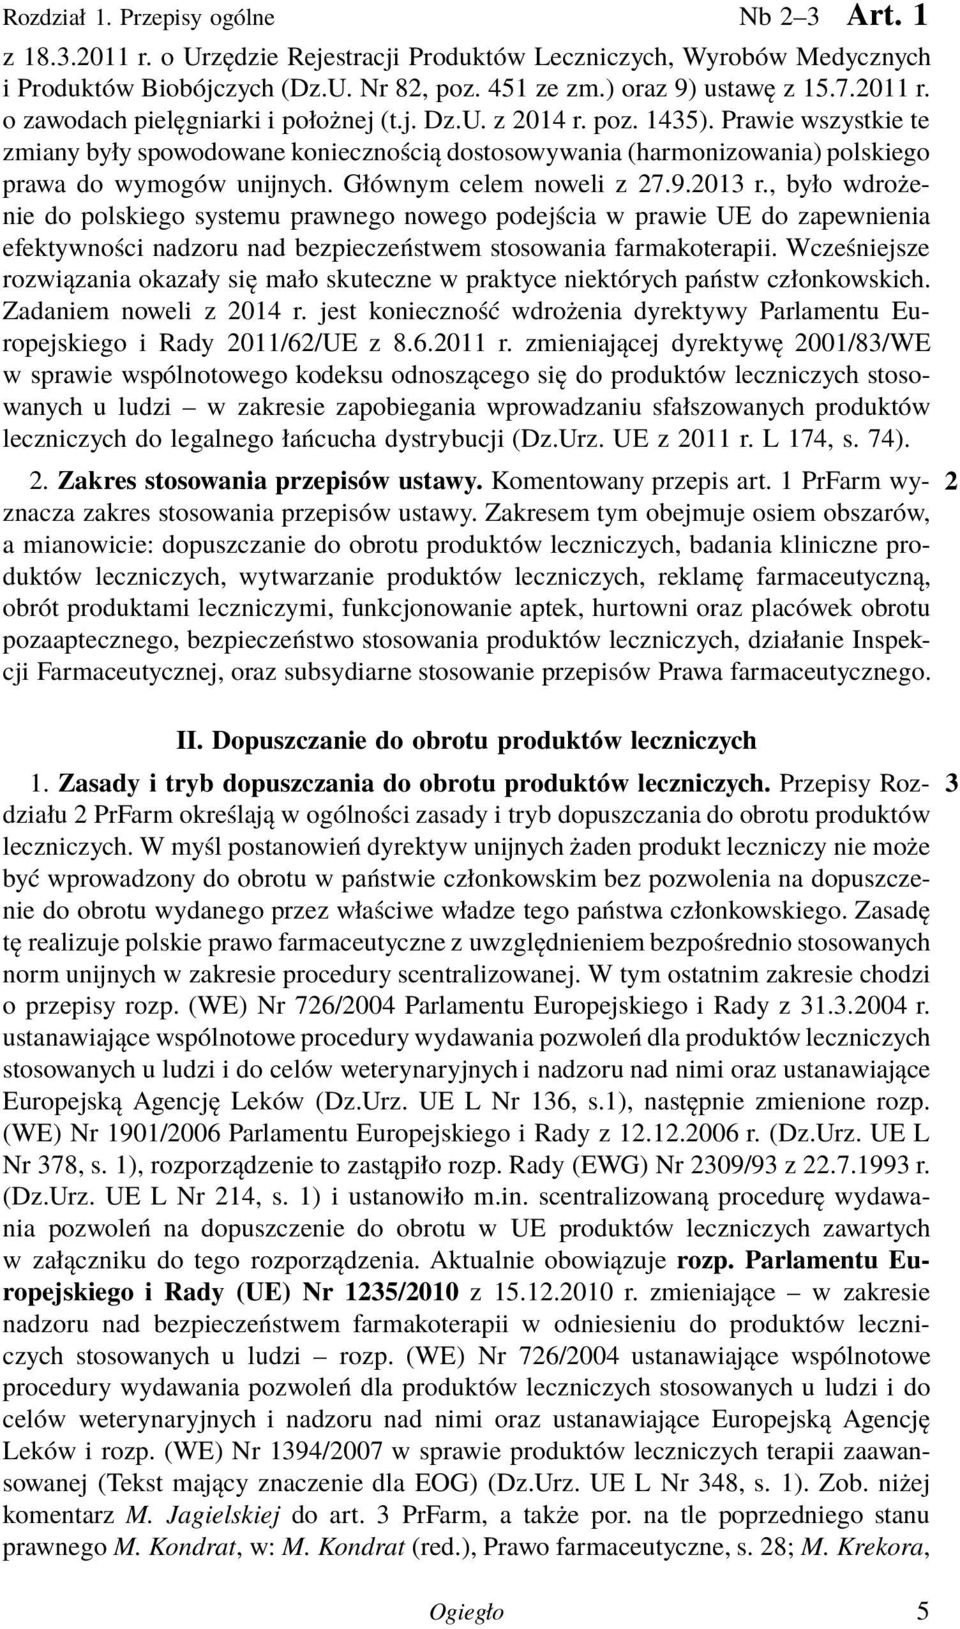 Prawie wszystkie te zmiany były spowodowane koniecznością dostosowywania (harmonizowania) polskiego prawa do wymogów unijnych. Głównym celem noweli z 27.9.2013 r.